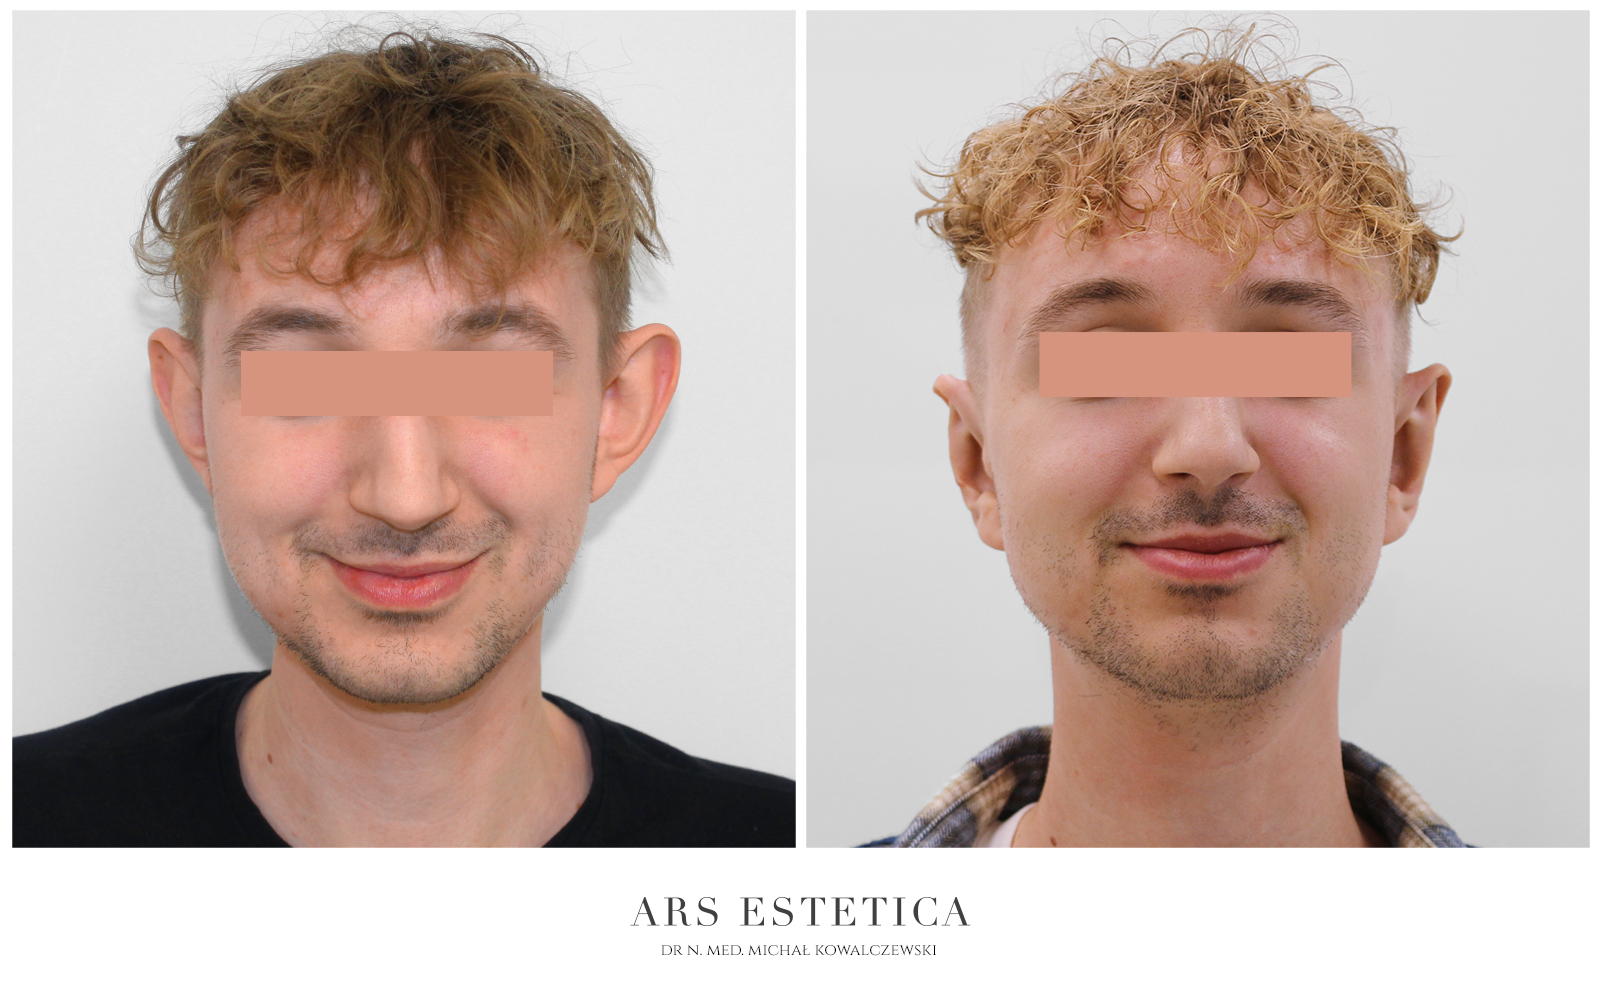 operacja odstających uszu zdjęcia przed i po